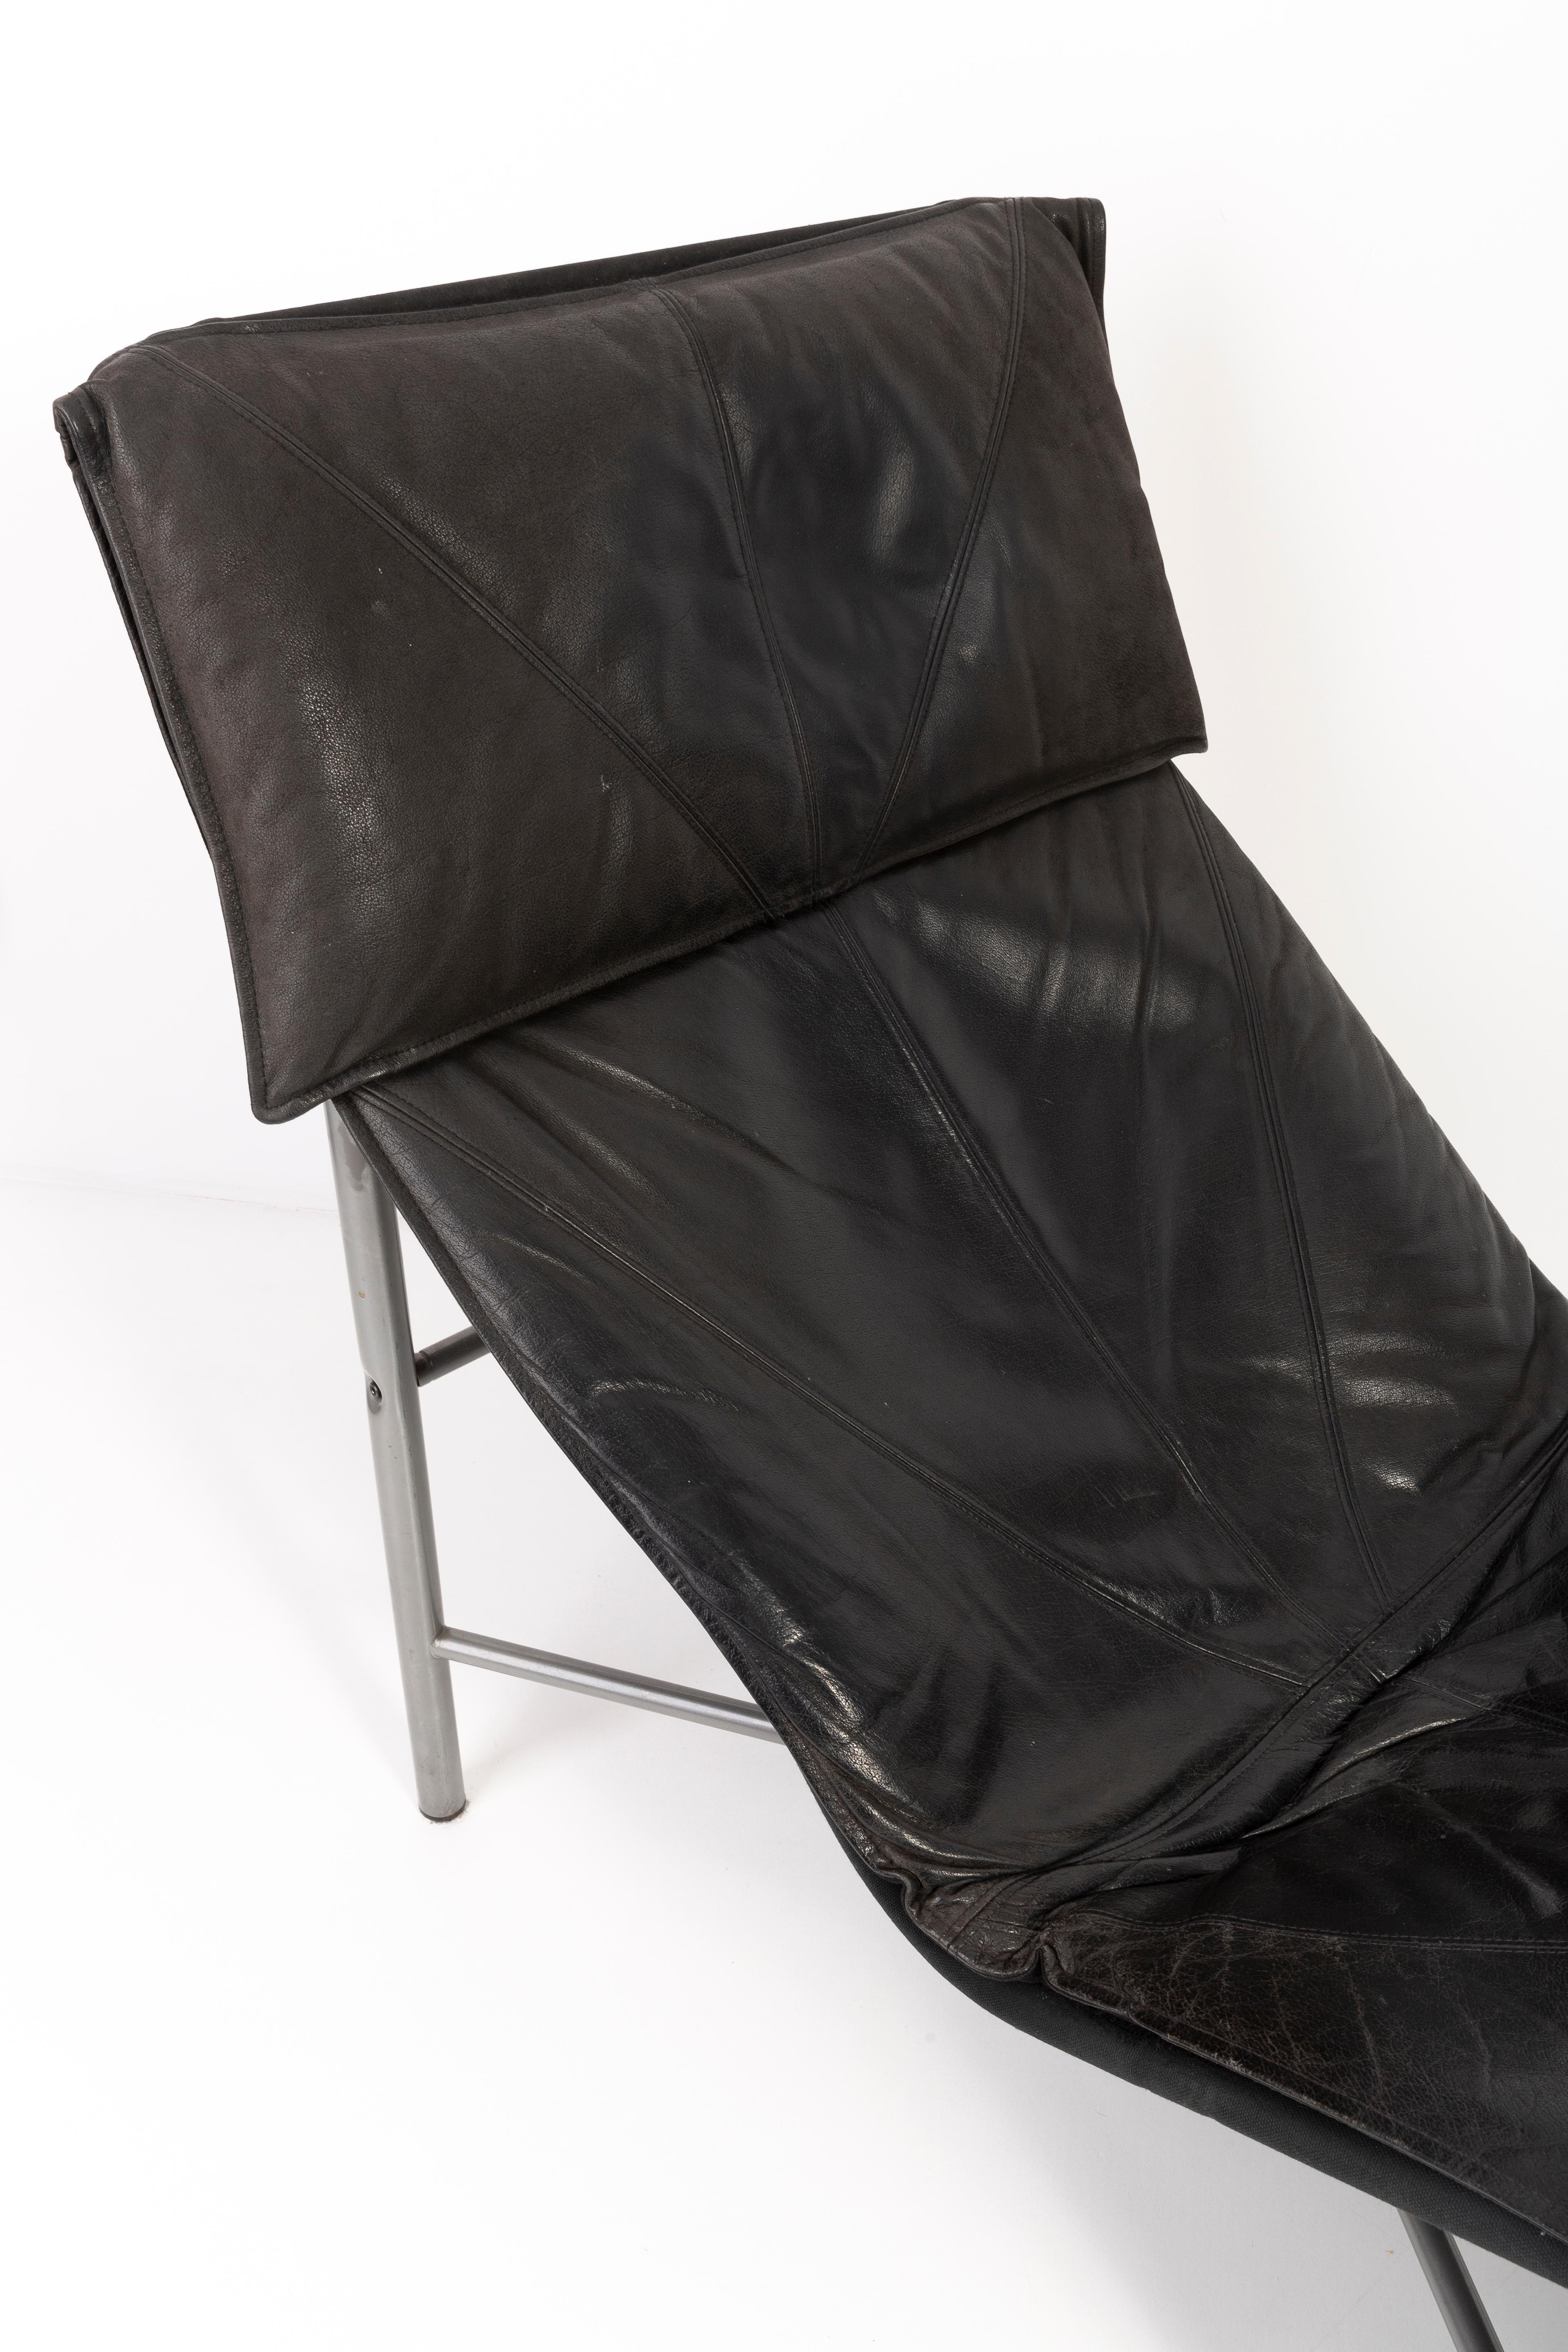 Midcentury Danish Modern Black Leather Chaise Lounge Chair by Tord Björklund In Good Condition In 05-080 Hornowek, PL